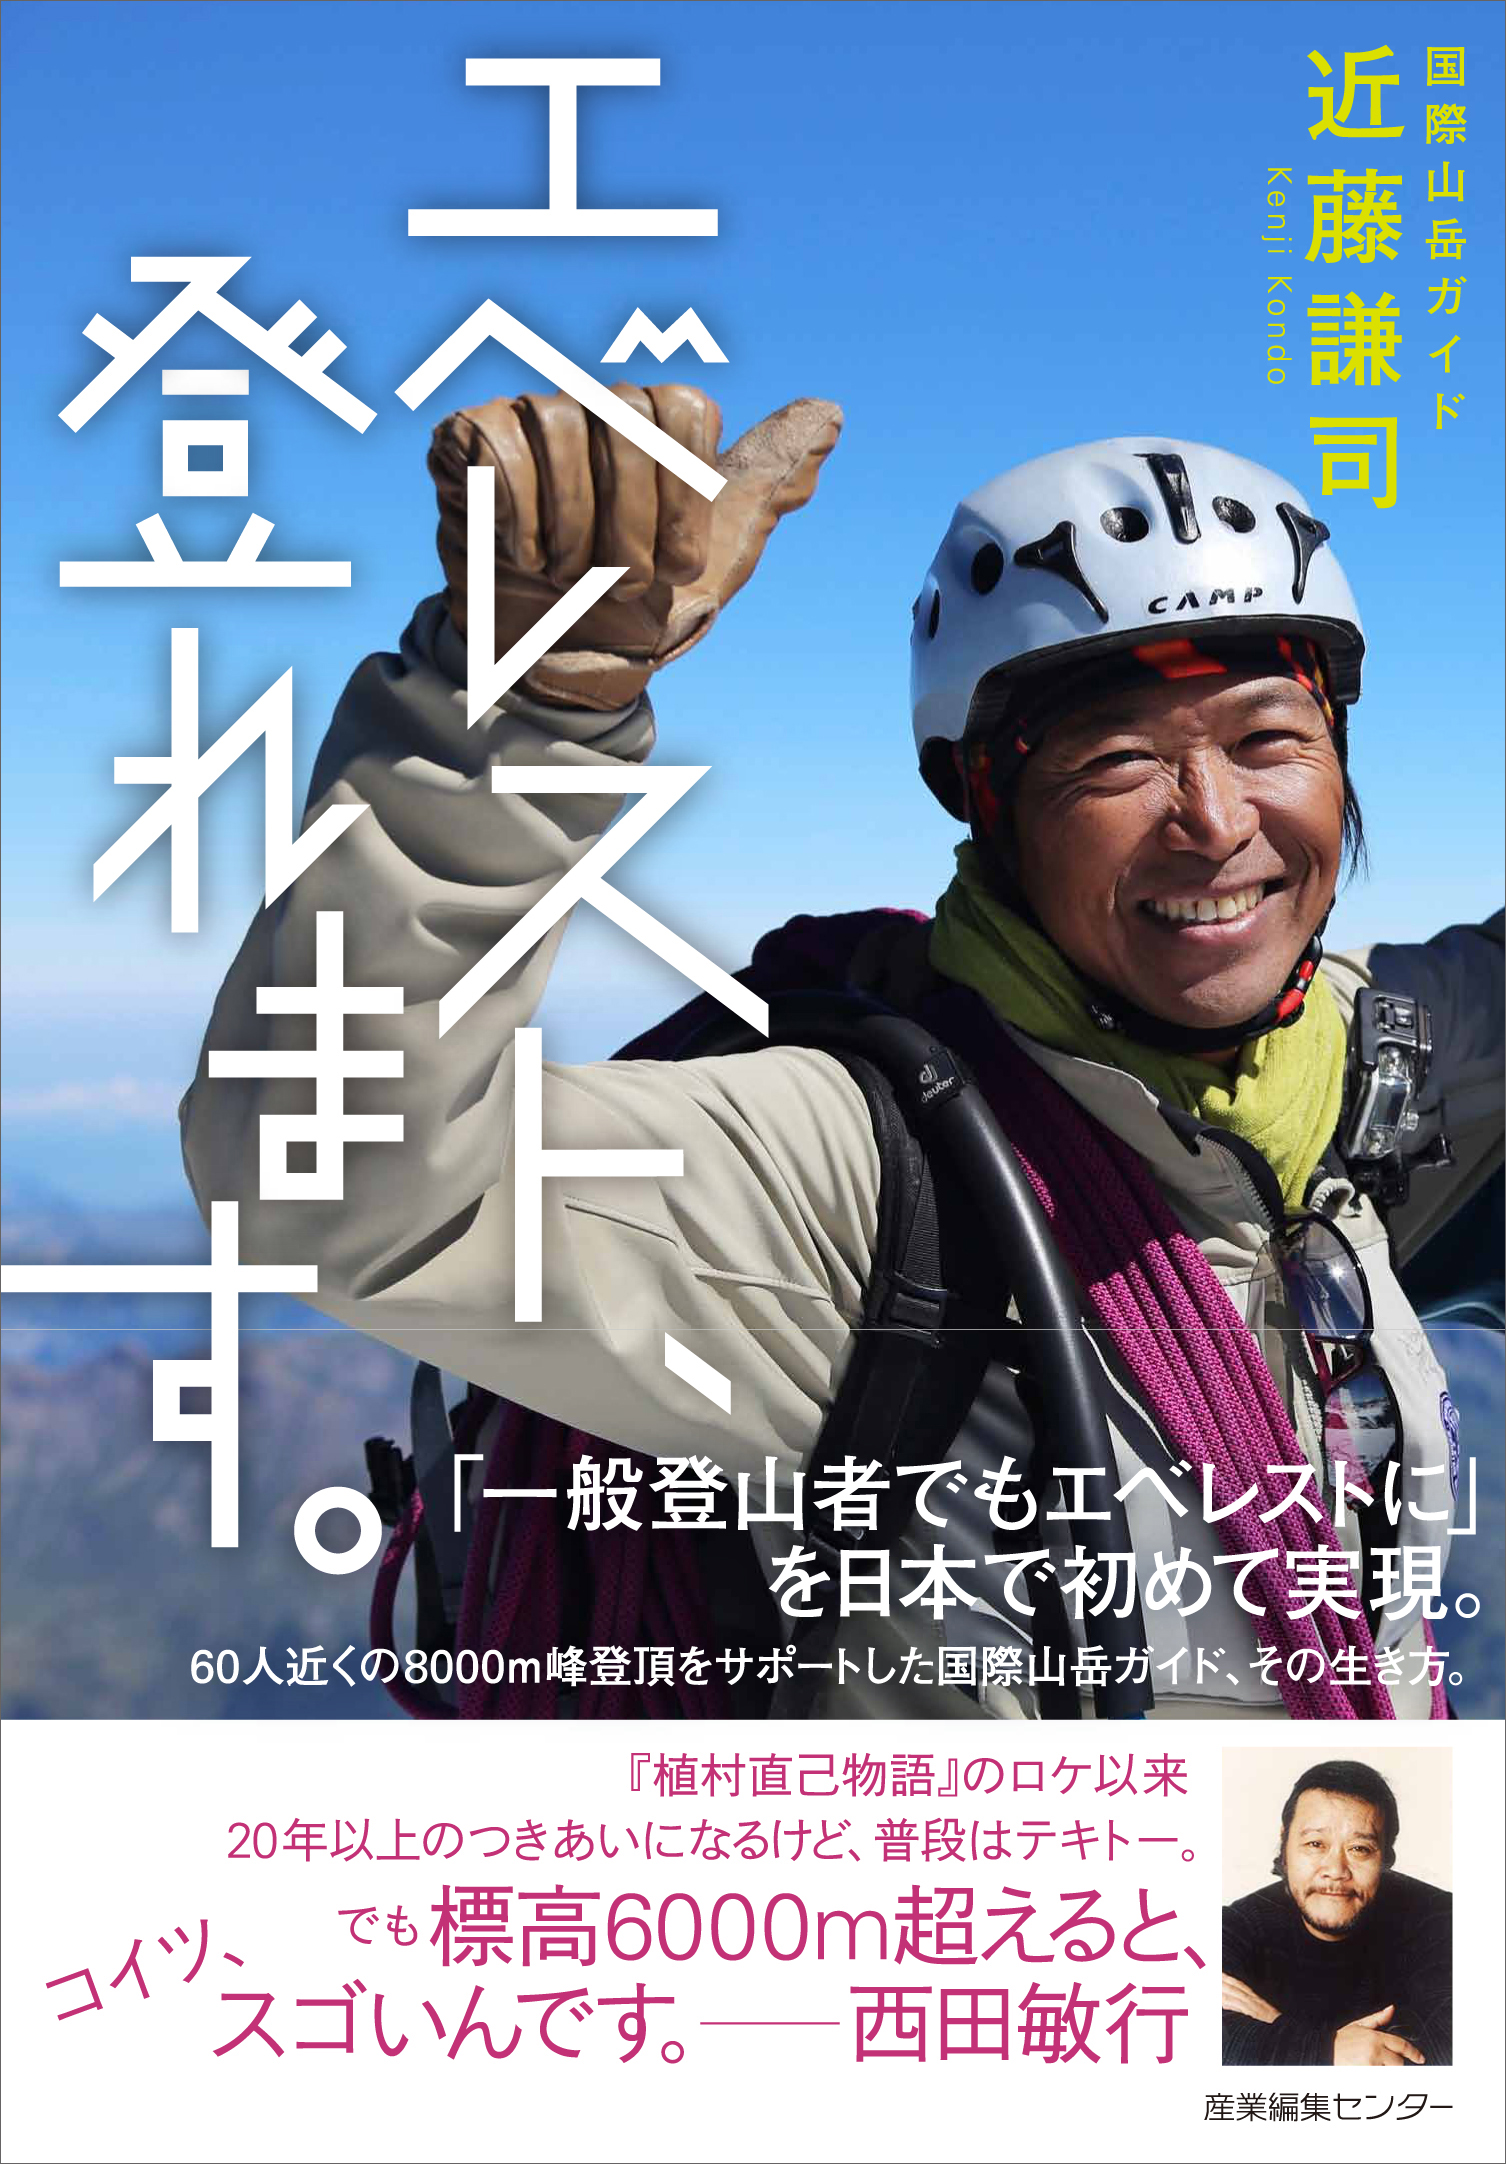 エベレスト 登れます 近藤 謙司 Kenji Kondo 産業編集センター 出版部